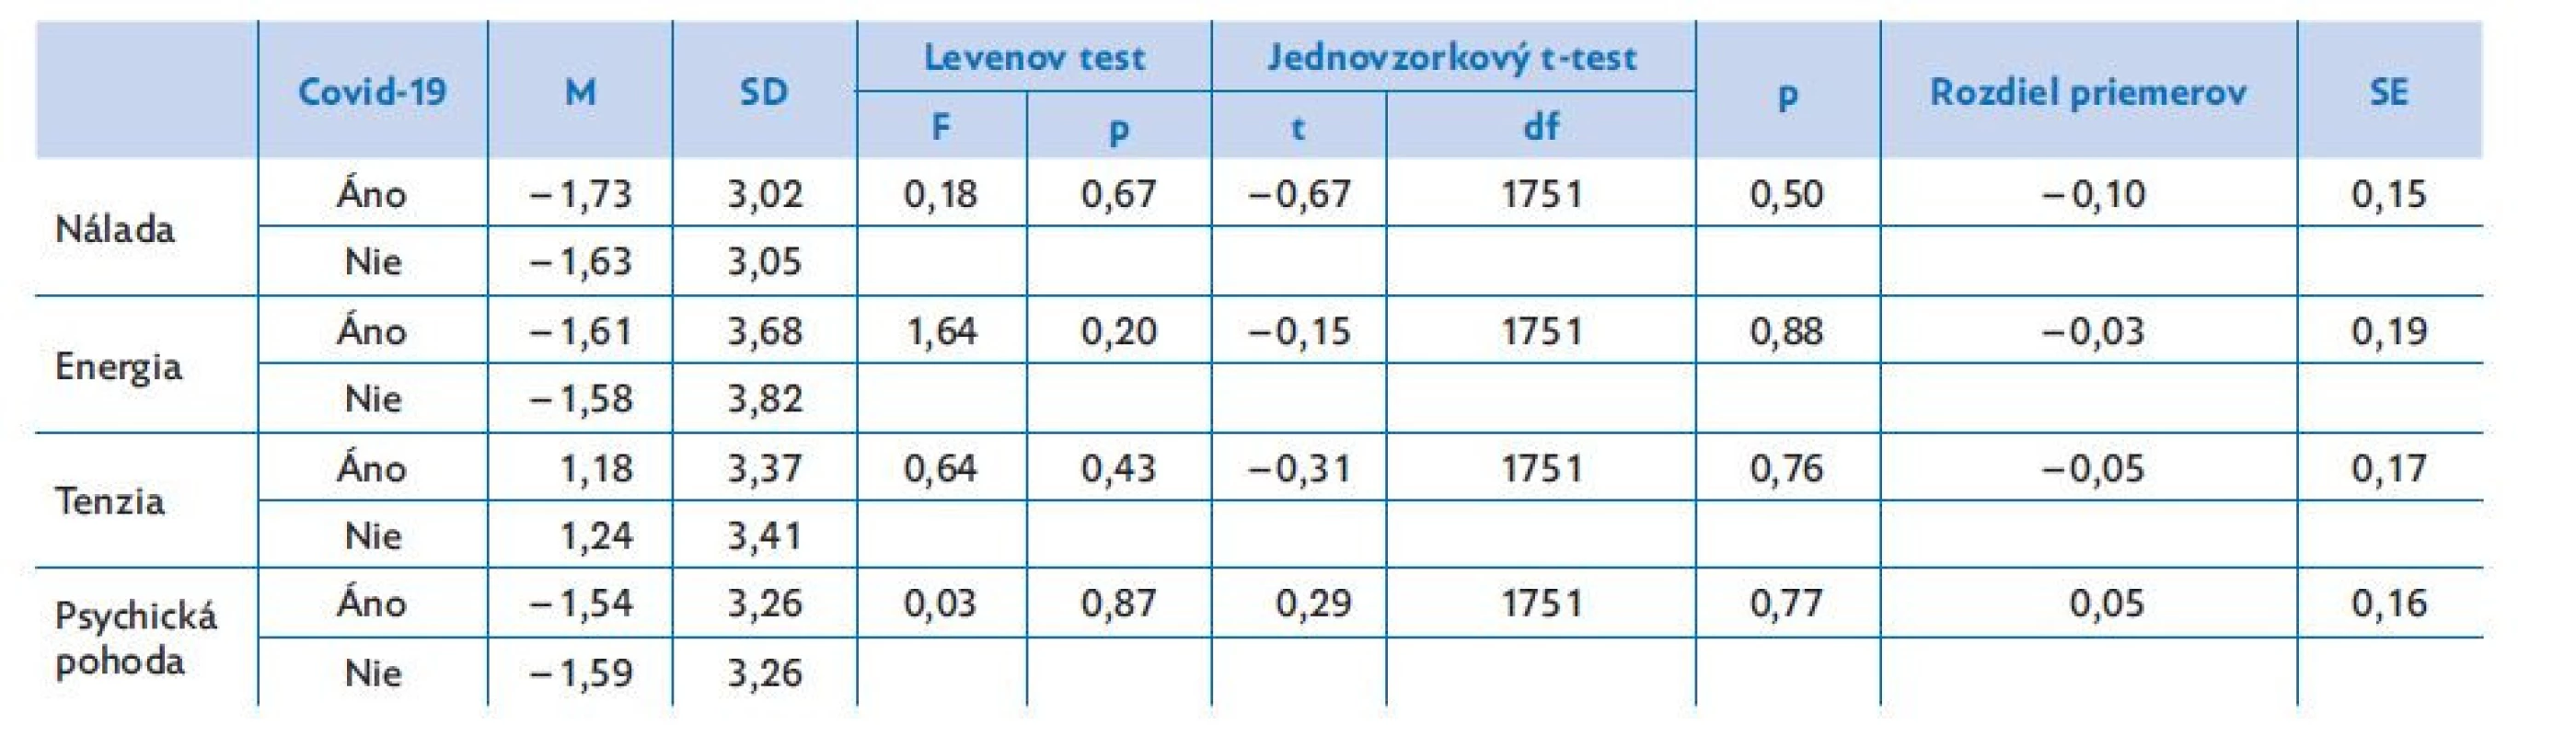 Rozdiely skúmaných parametrov na základe prekonania ochorenia covid-19 u respondentov alebo ich blízkych